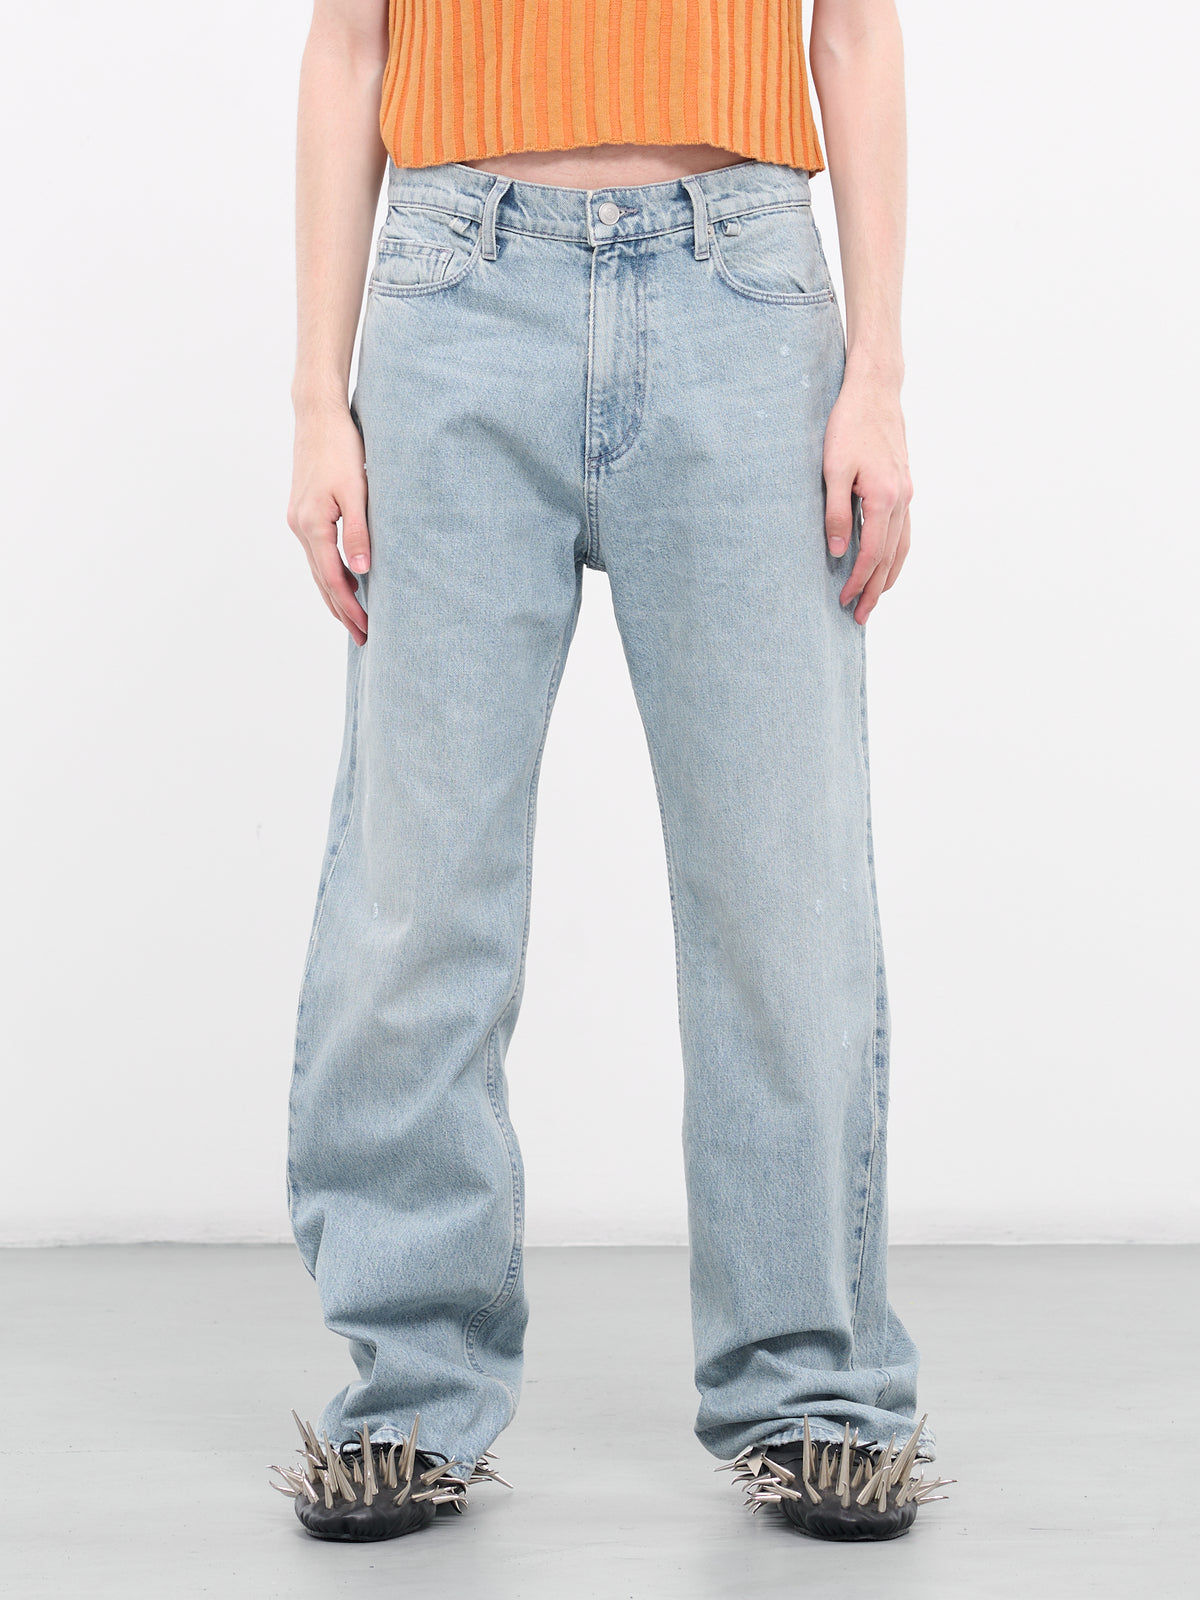 Denim Jeans (MP23DF1S-JE2005-LIGHT-VINTAGE)